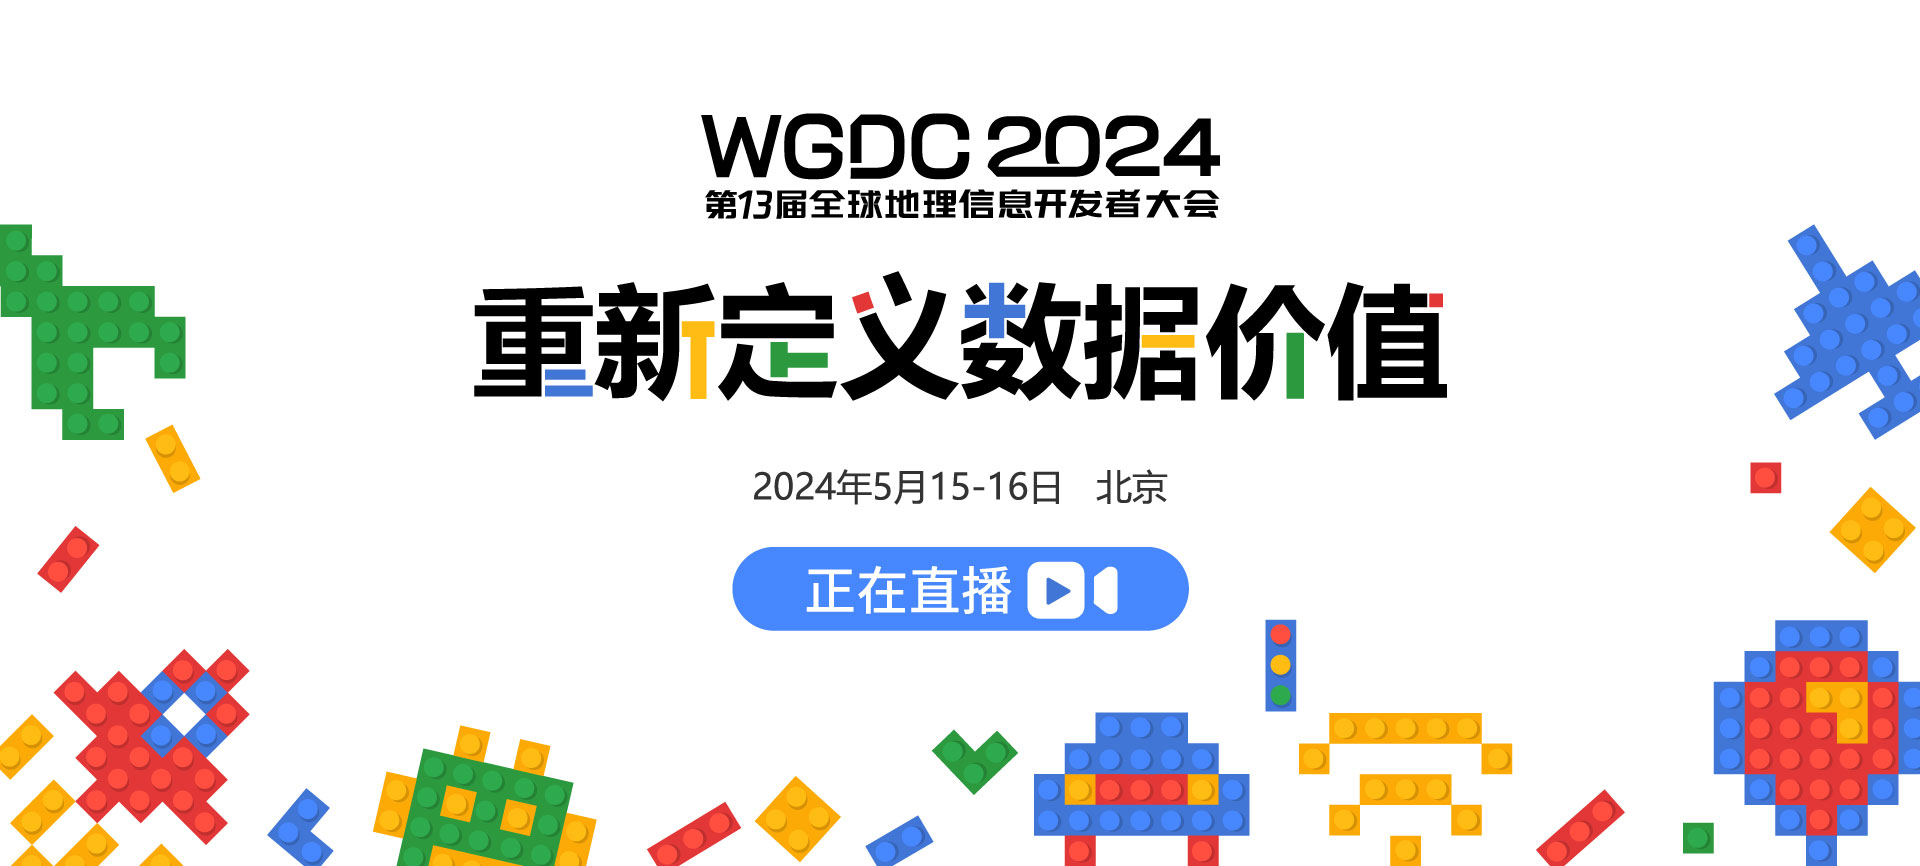 WGDC2024开幕式